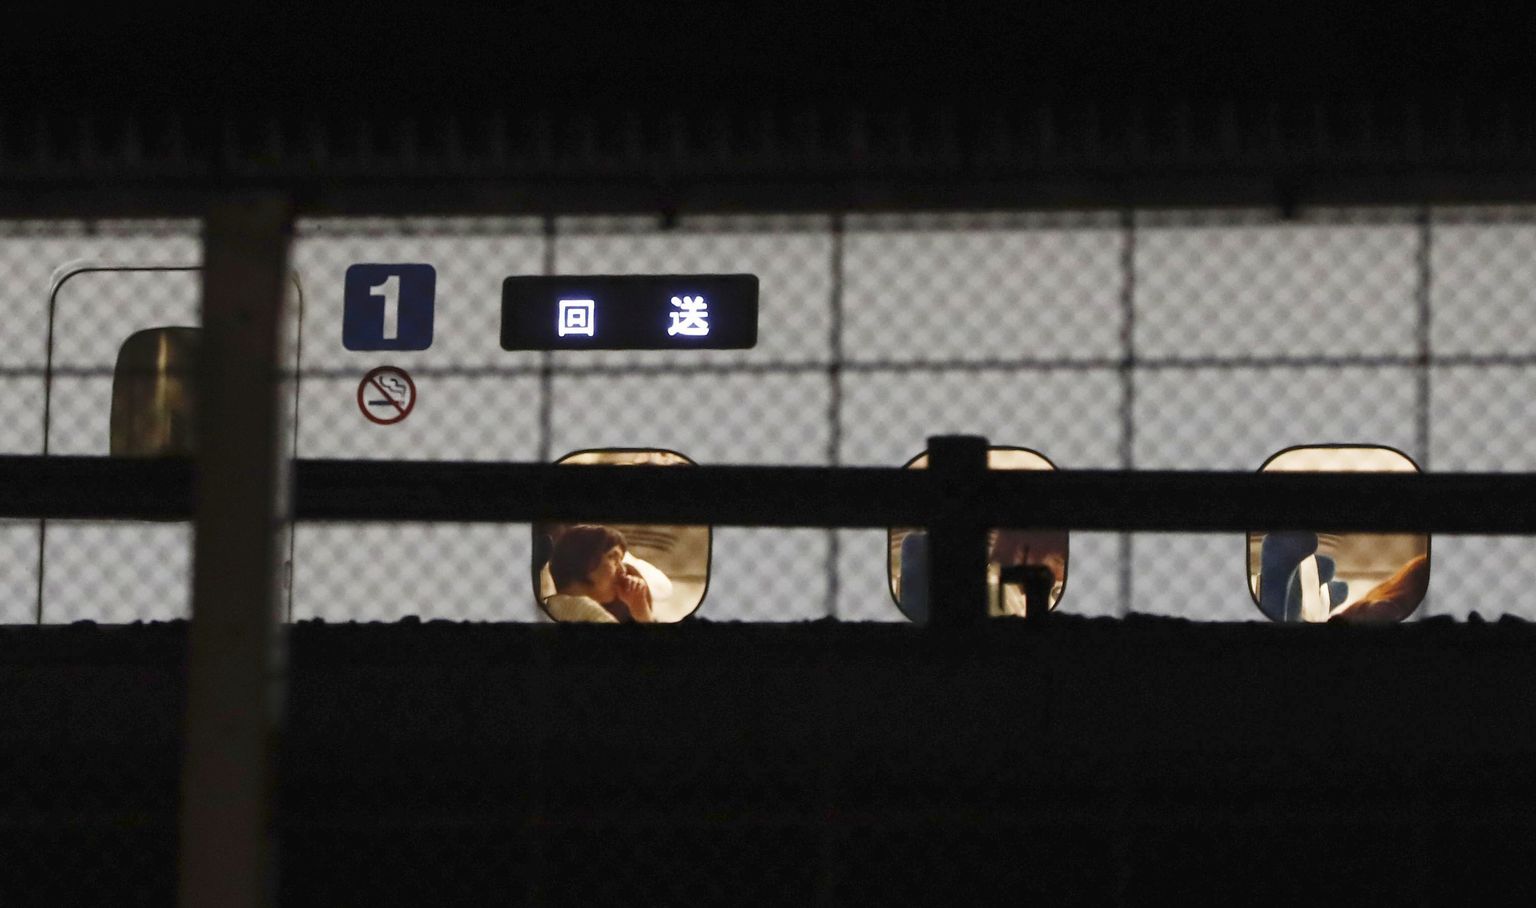 Kiirrong seismas pärast rünnakut Odawara jaamas.